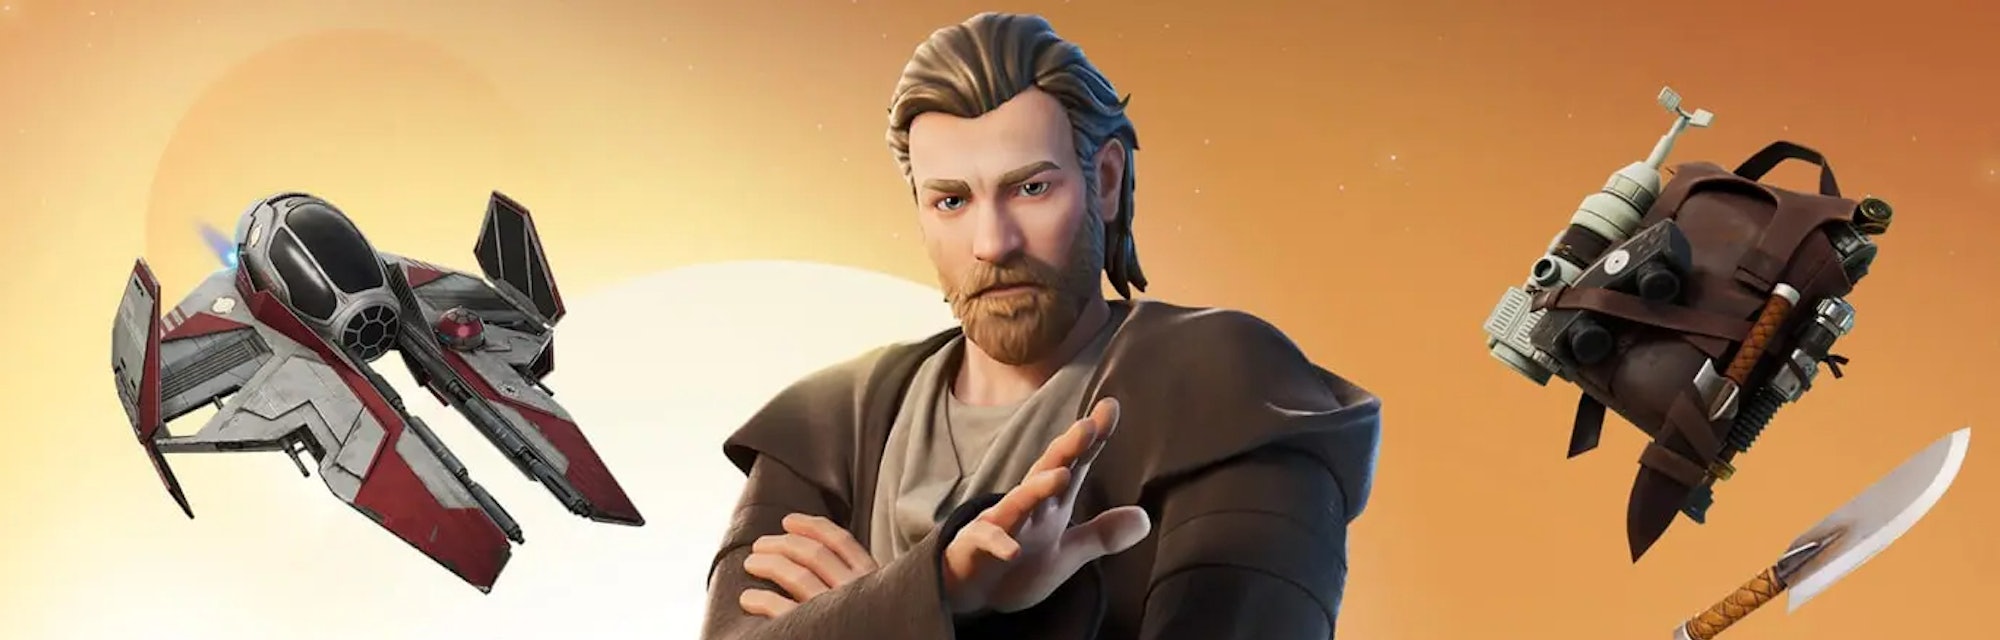 Fortnite Obi-Wan